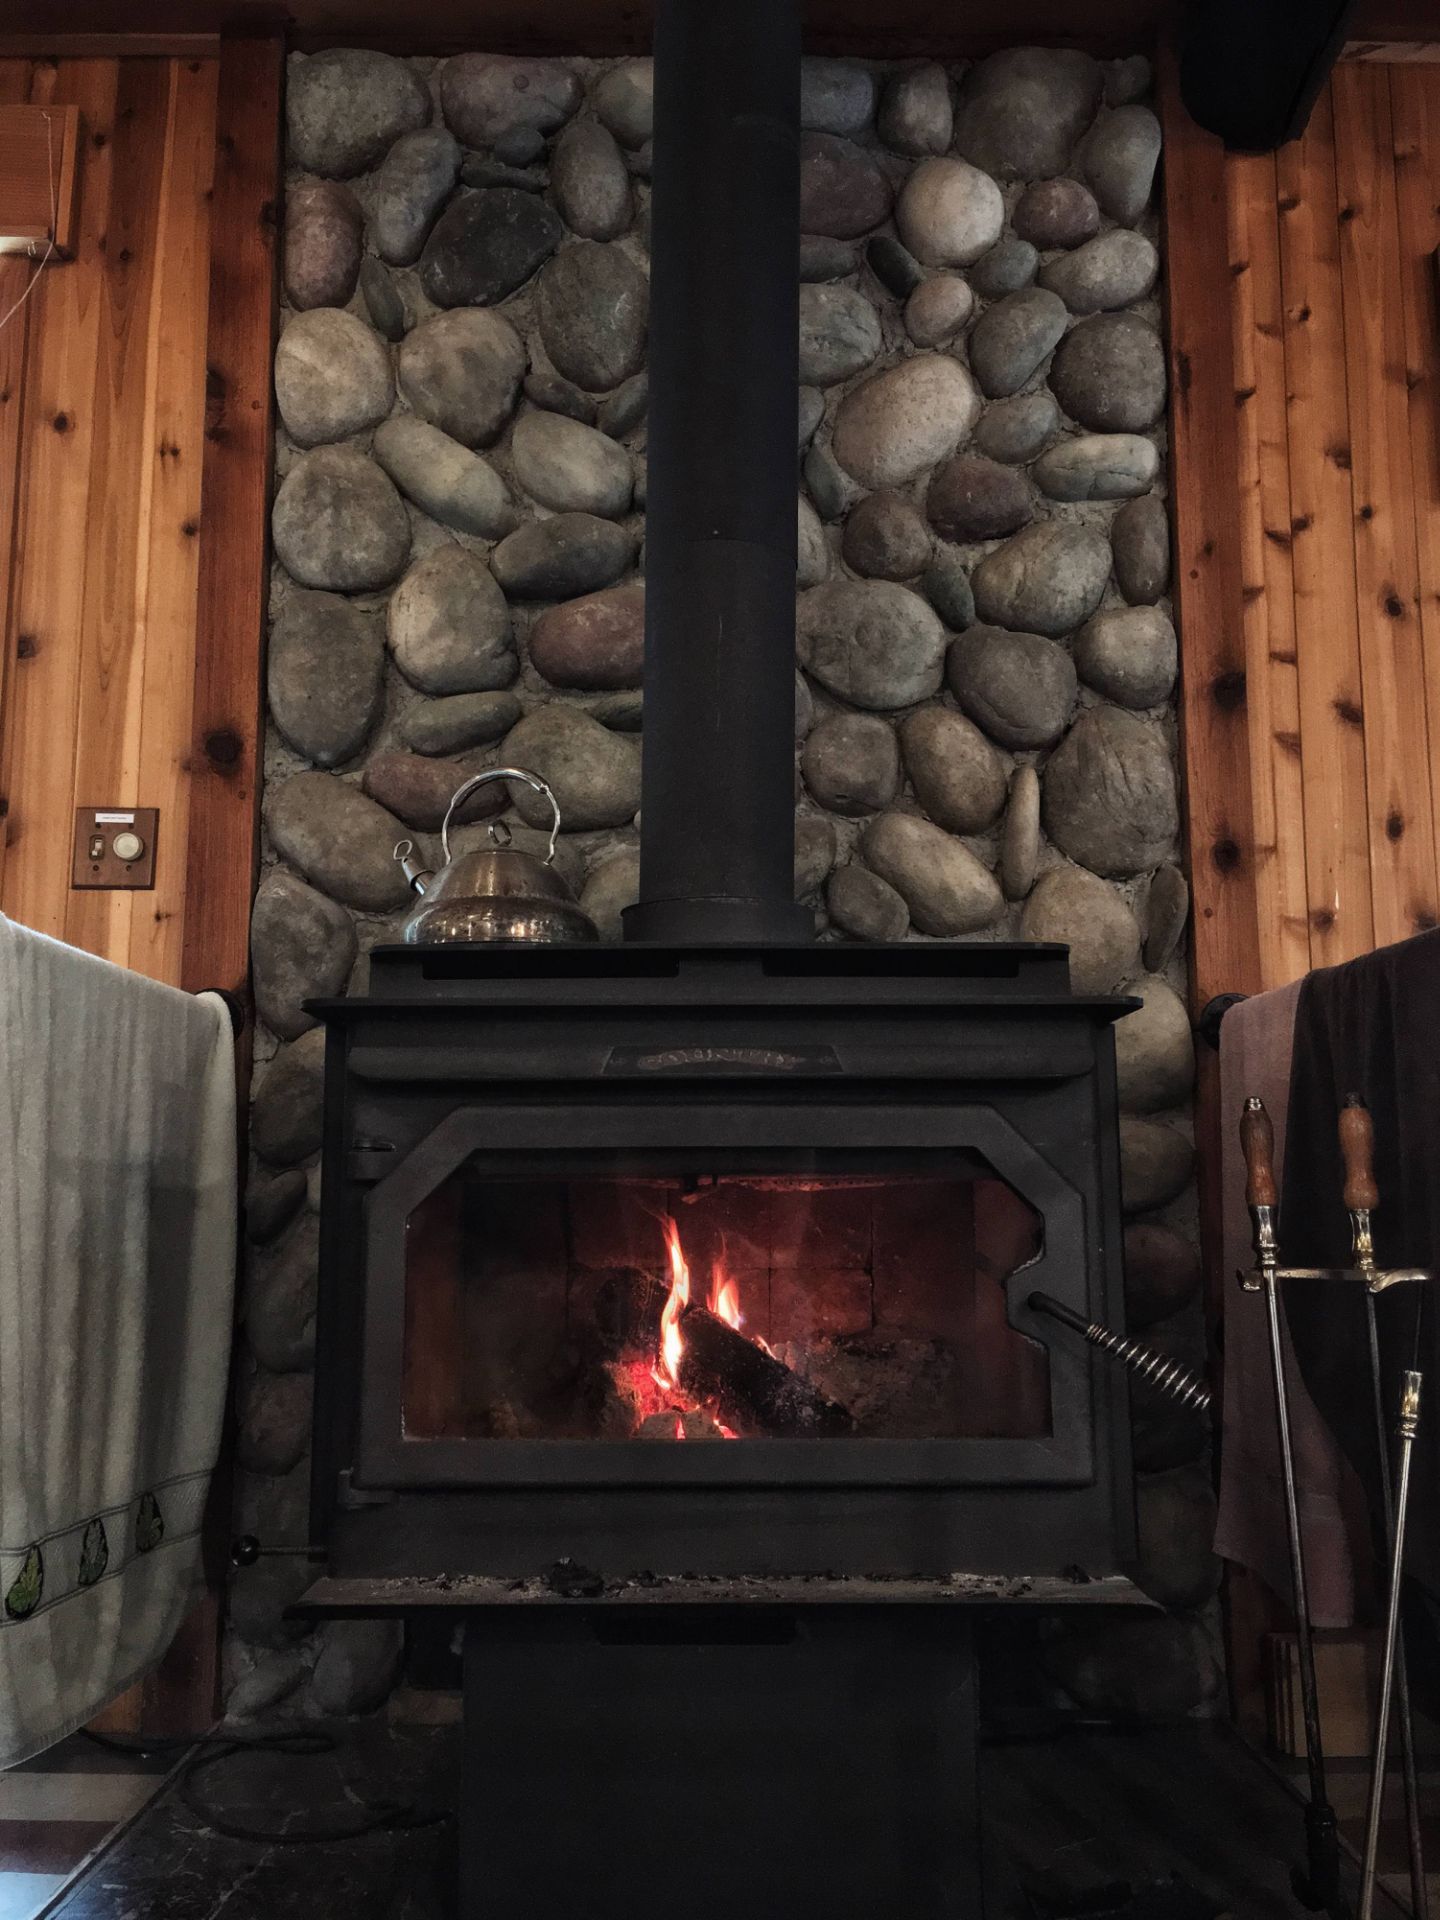 Woodland Hills Fireplace Unique 2020ç¾åæéæ ç¥ ç¾åæ¯é å°å åç¾æ´²èªç±è¡æéæå Trip